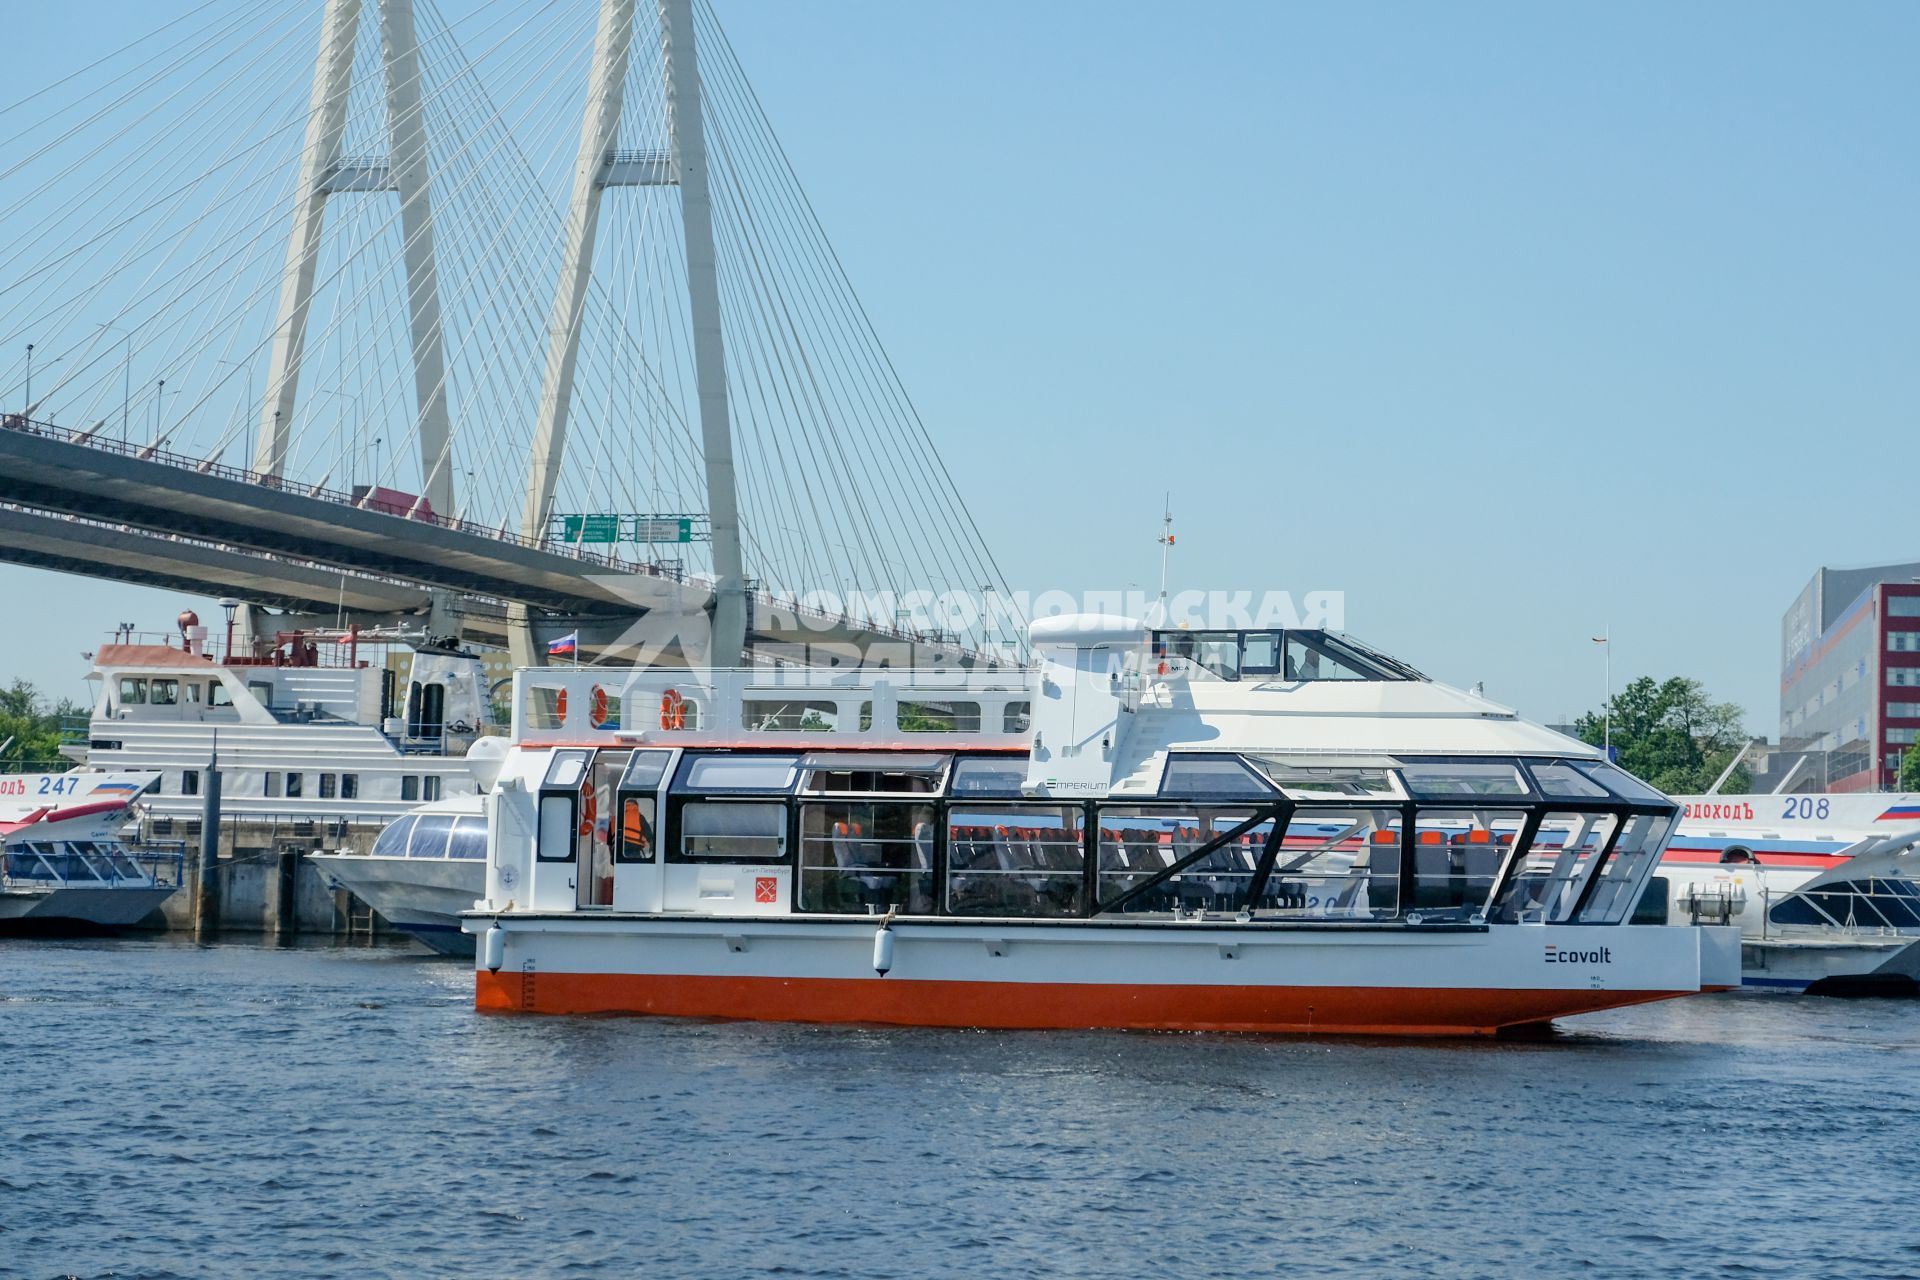 Санкт-Петербург. Двухпалубный речной электрокатамаран Ecovolt  после спуска на воду на территории Пассажирского порта.